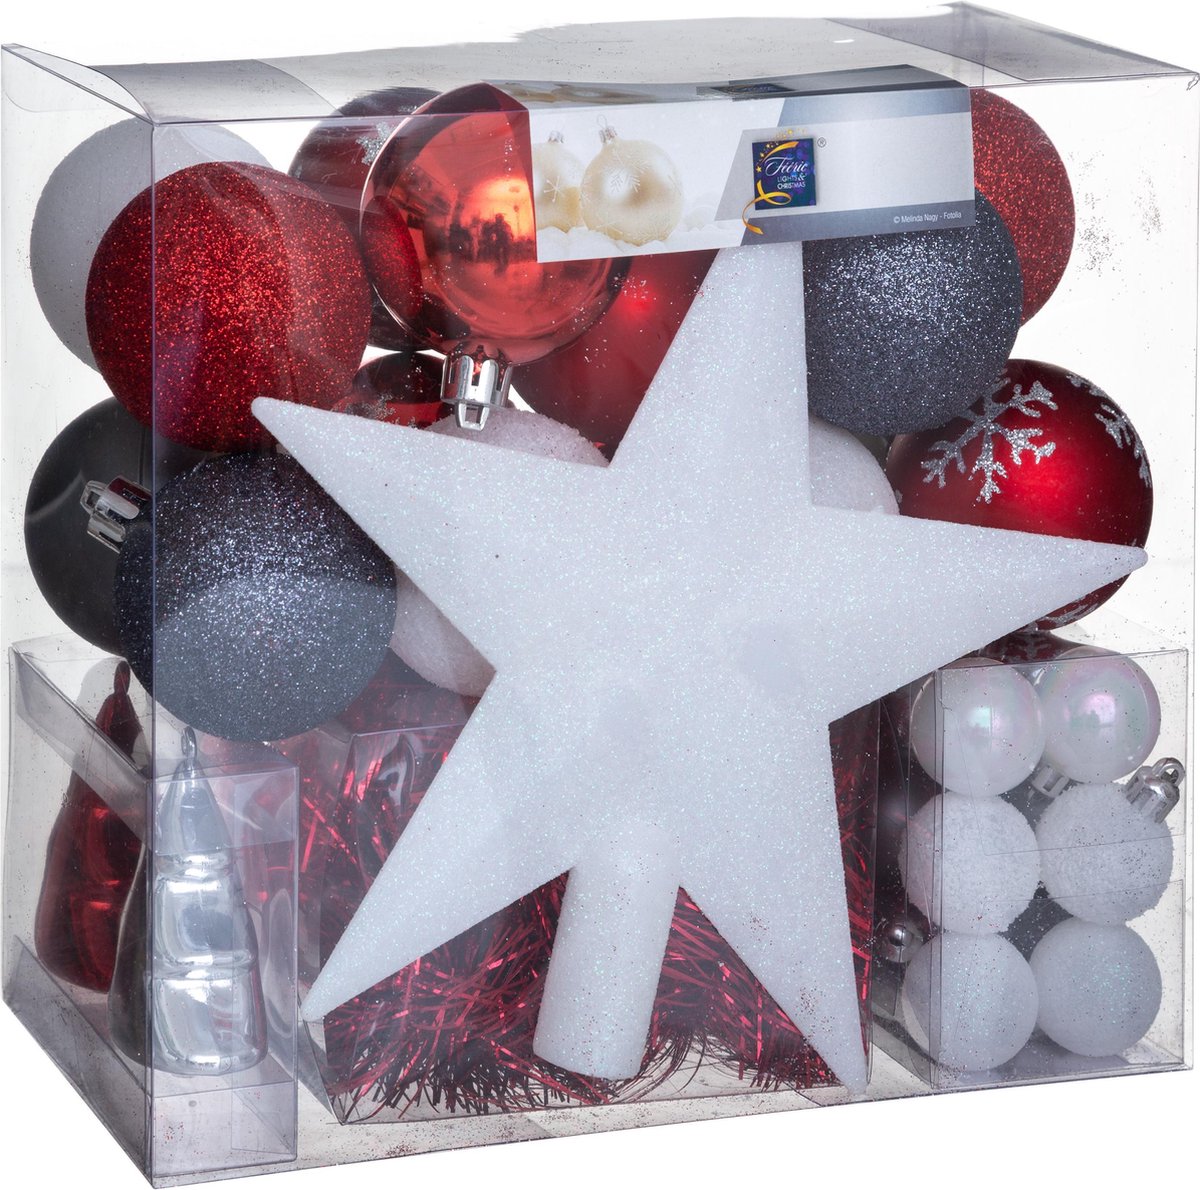 Kerstballenset 44 delig met kerstster - 44 stuks - Kerstbal - Kerstster - Kerstversiering - Grijs wit en rood